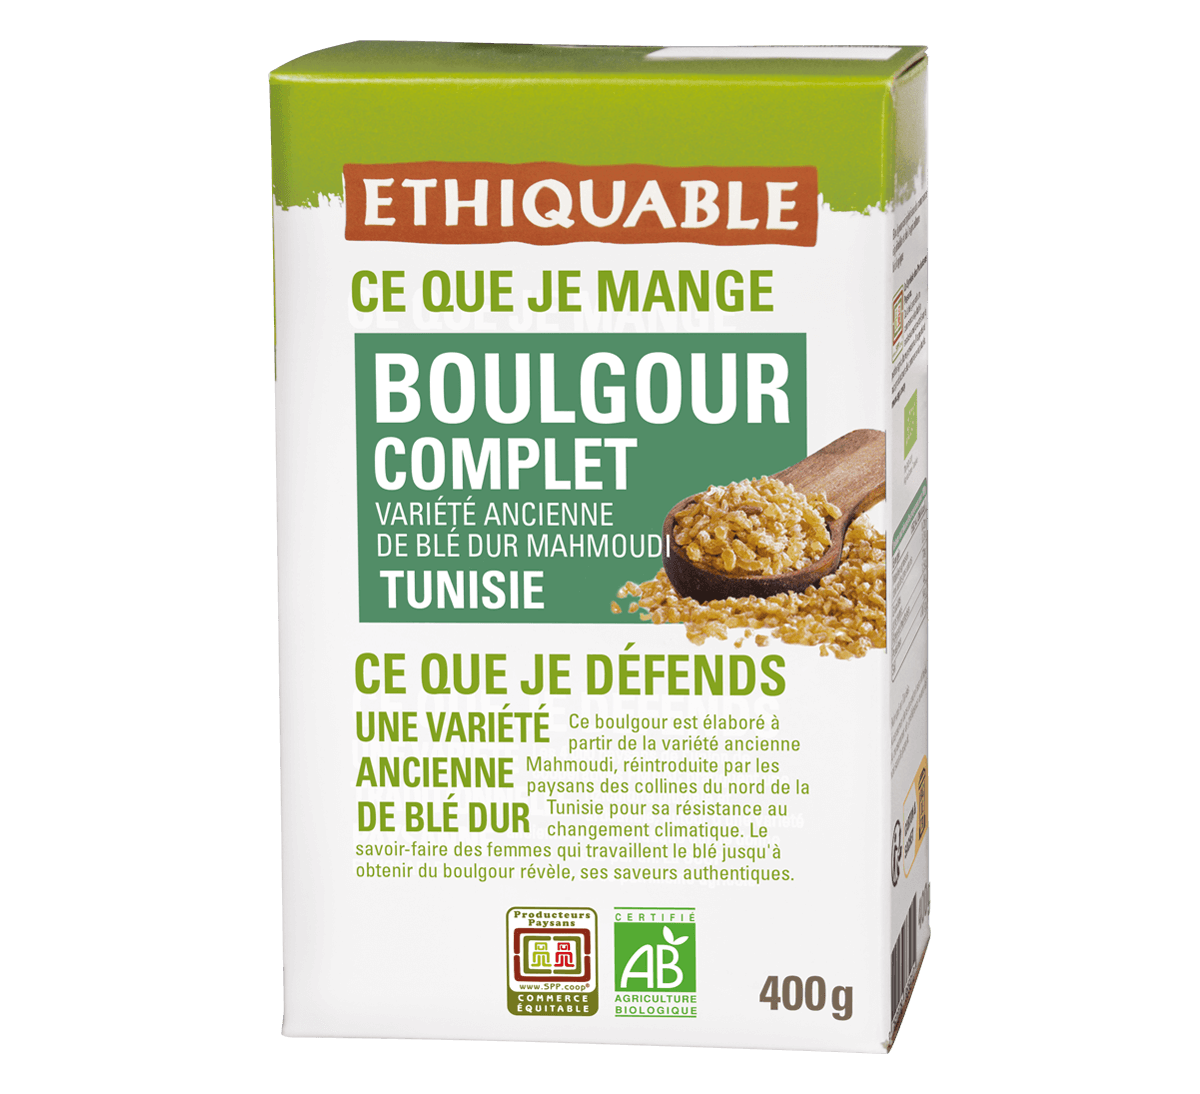 Ethiquable- Boulgour complet blé ancien de Tunisie bio et issu du Commerce équitable